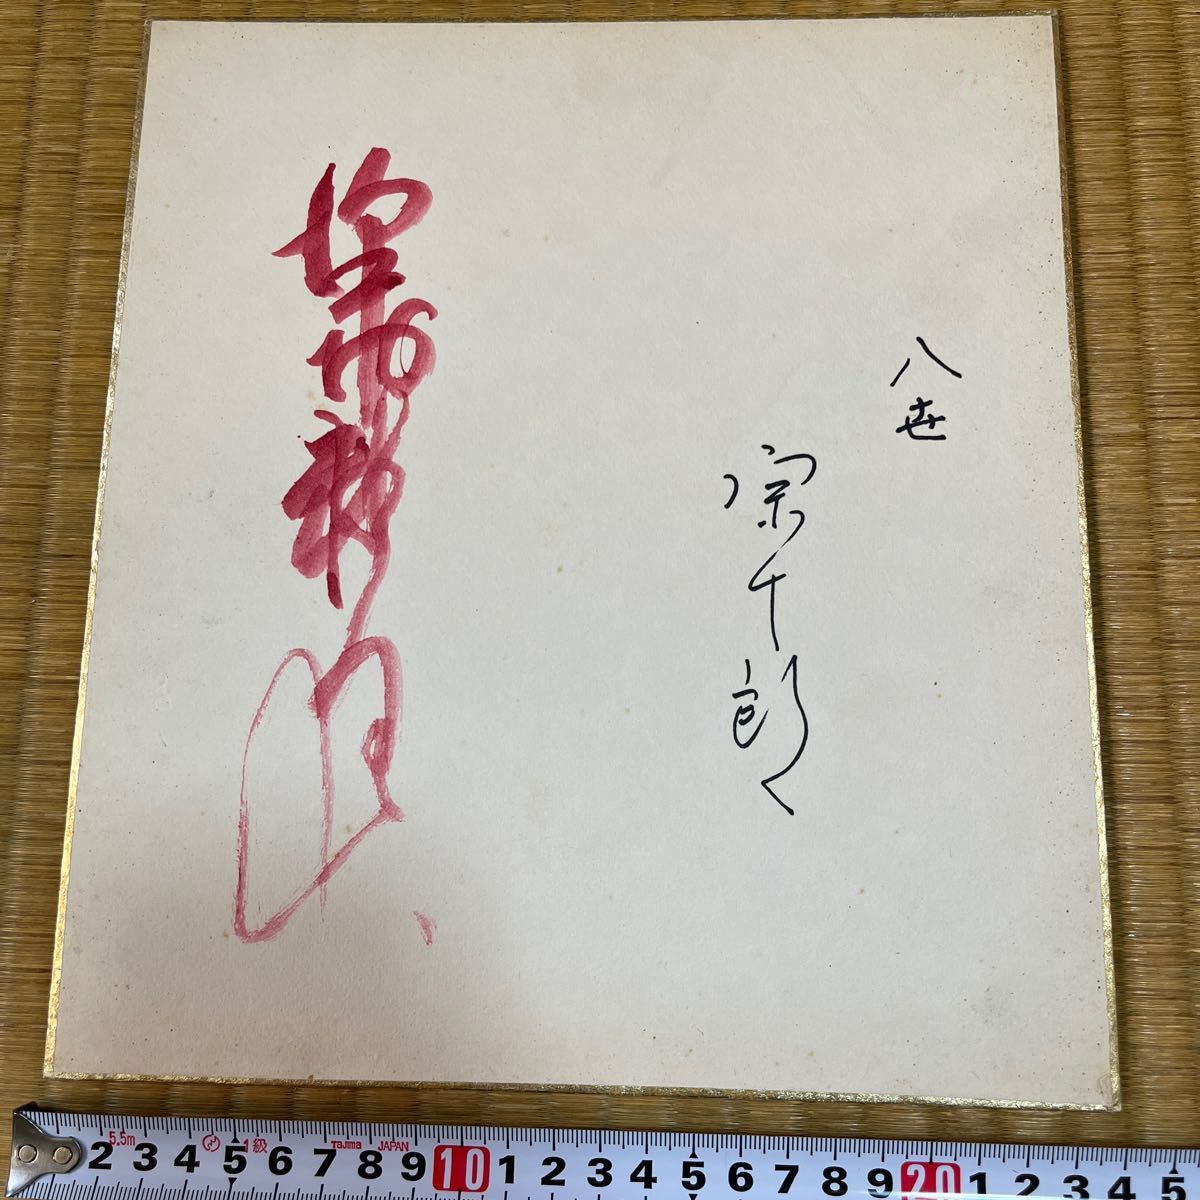 आठवीं पीढ़ी के काबुकी अभिनेता सवामुरा सोजुरो द्वारा हस्ताक्षरित रंगीन कागज, सेलिब्रिटी सामान, संकेत